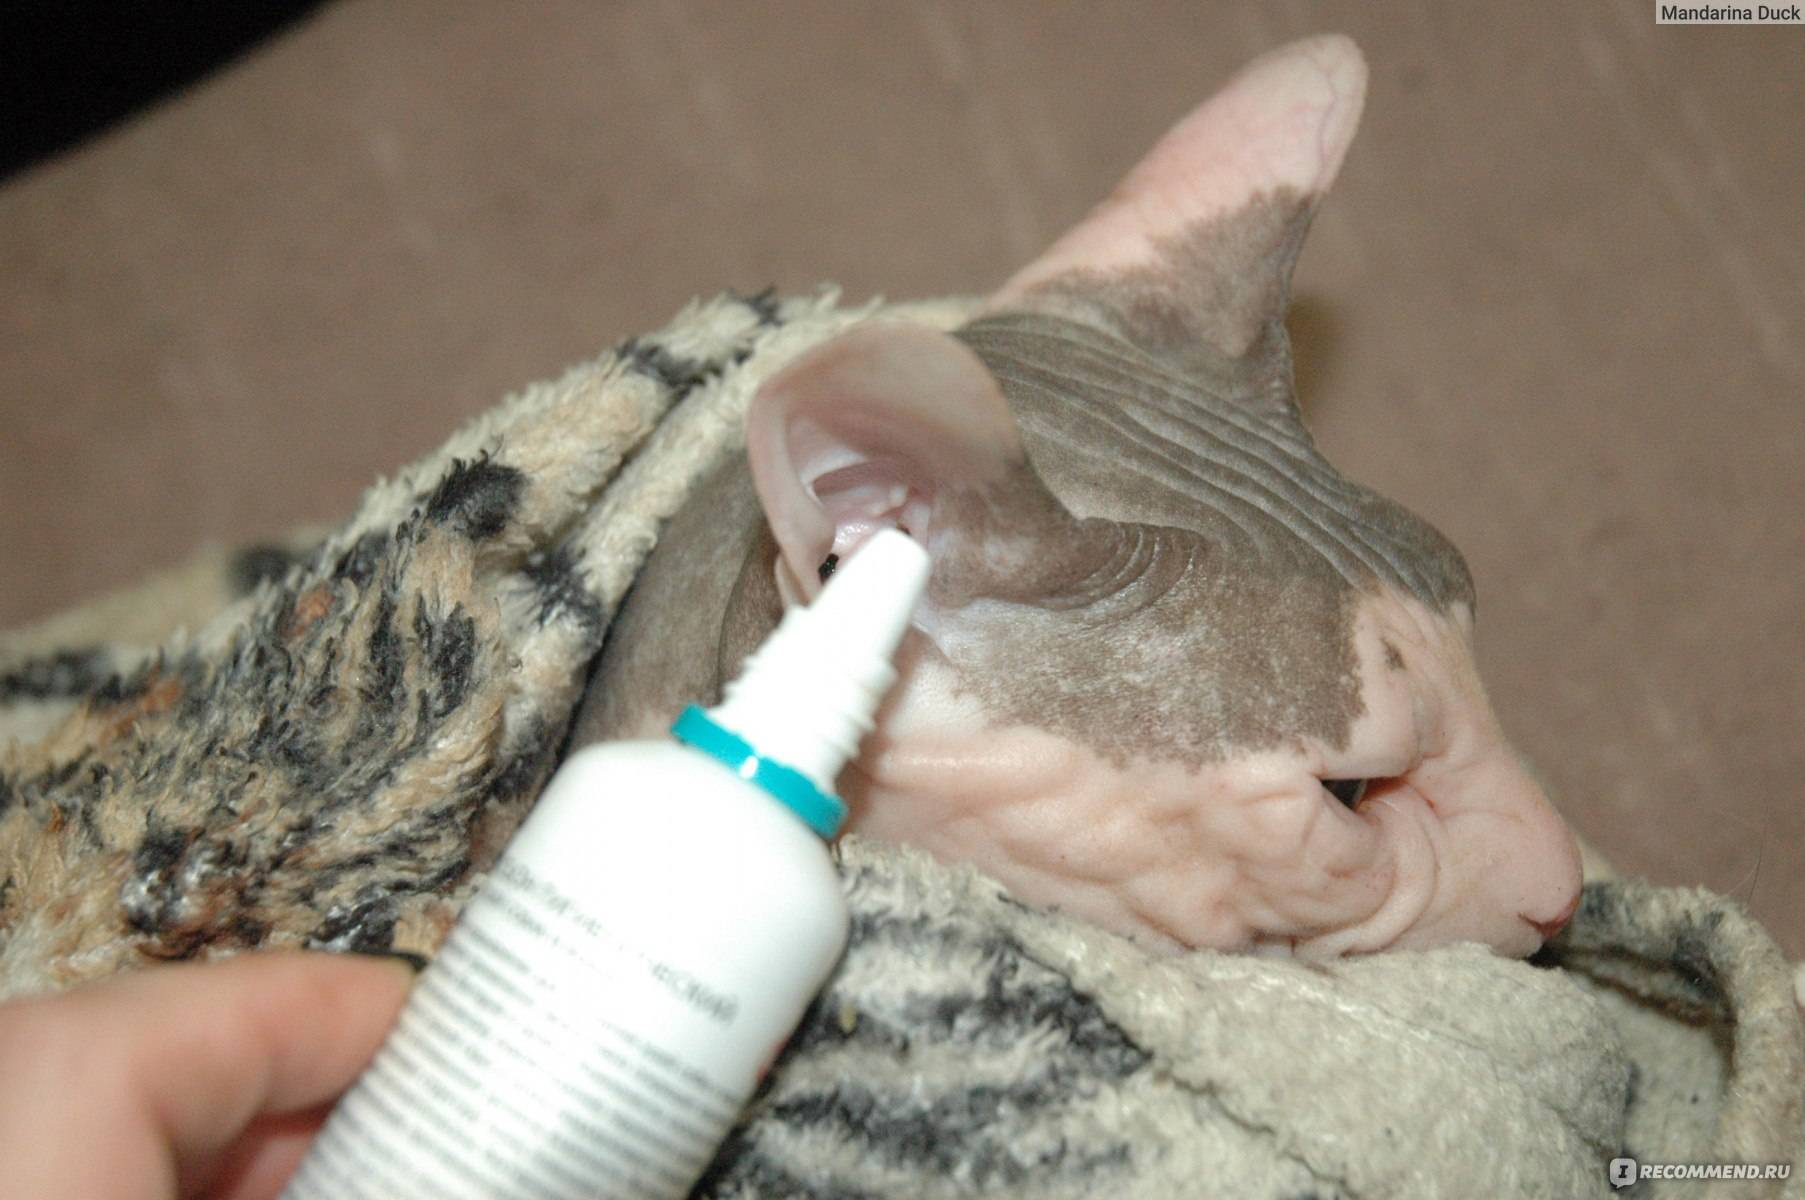 Уход за ушами кошки: как часто нужно чистить в домашних условиях, а также лосьон, капли, гель и другие средства и жидкости для этого